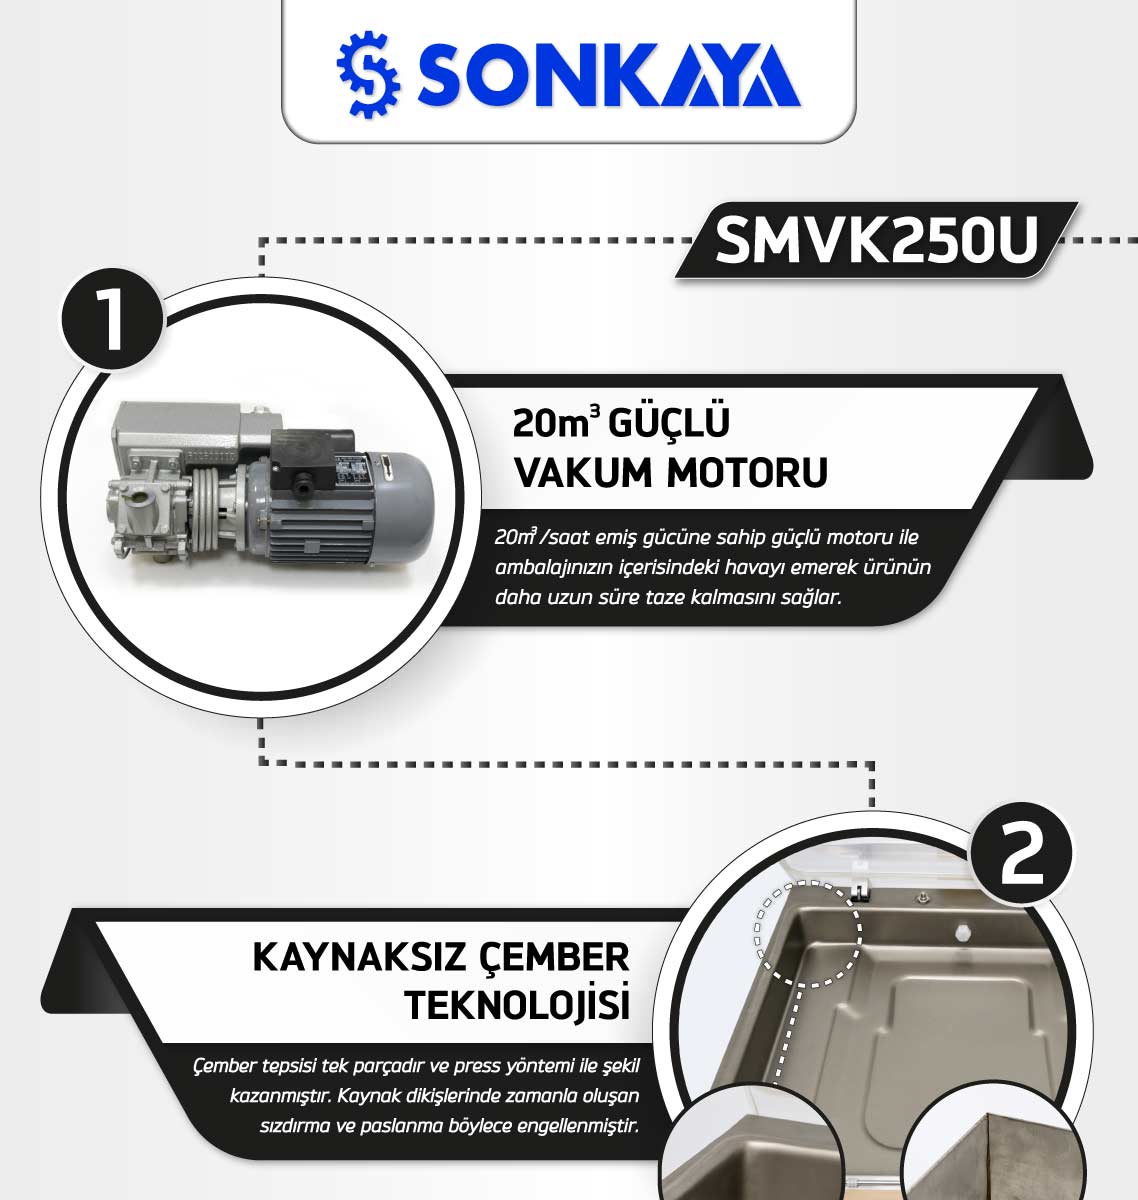 Sonkaya SMVK250U Vakum Paketleme Makinası Özellikleri - 1